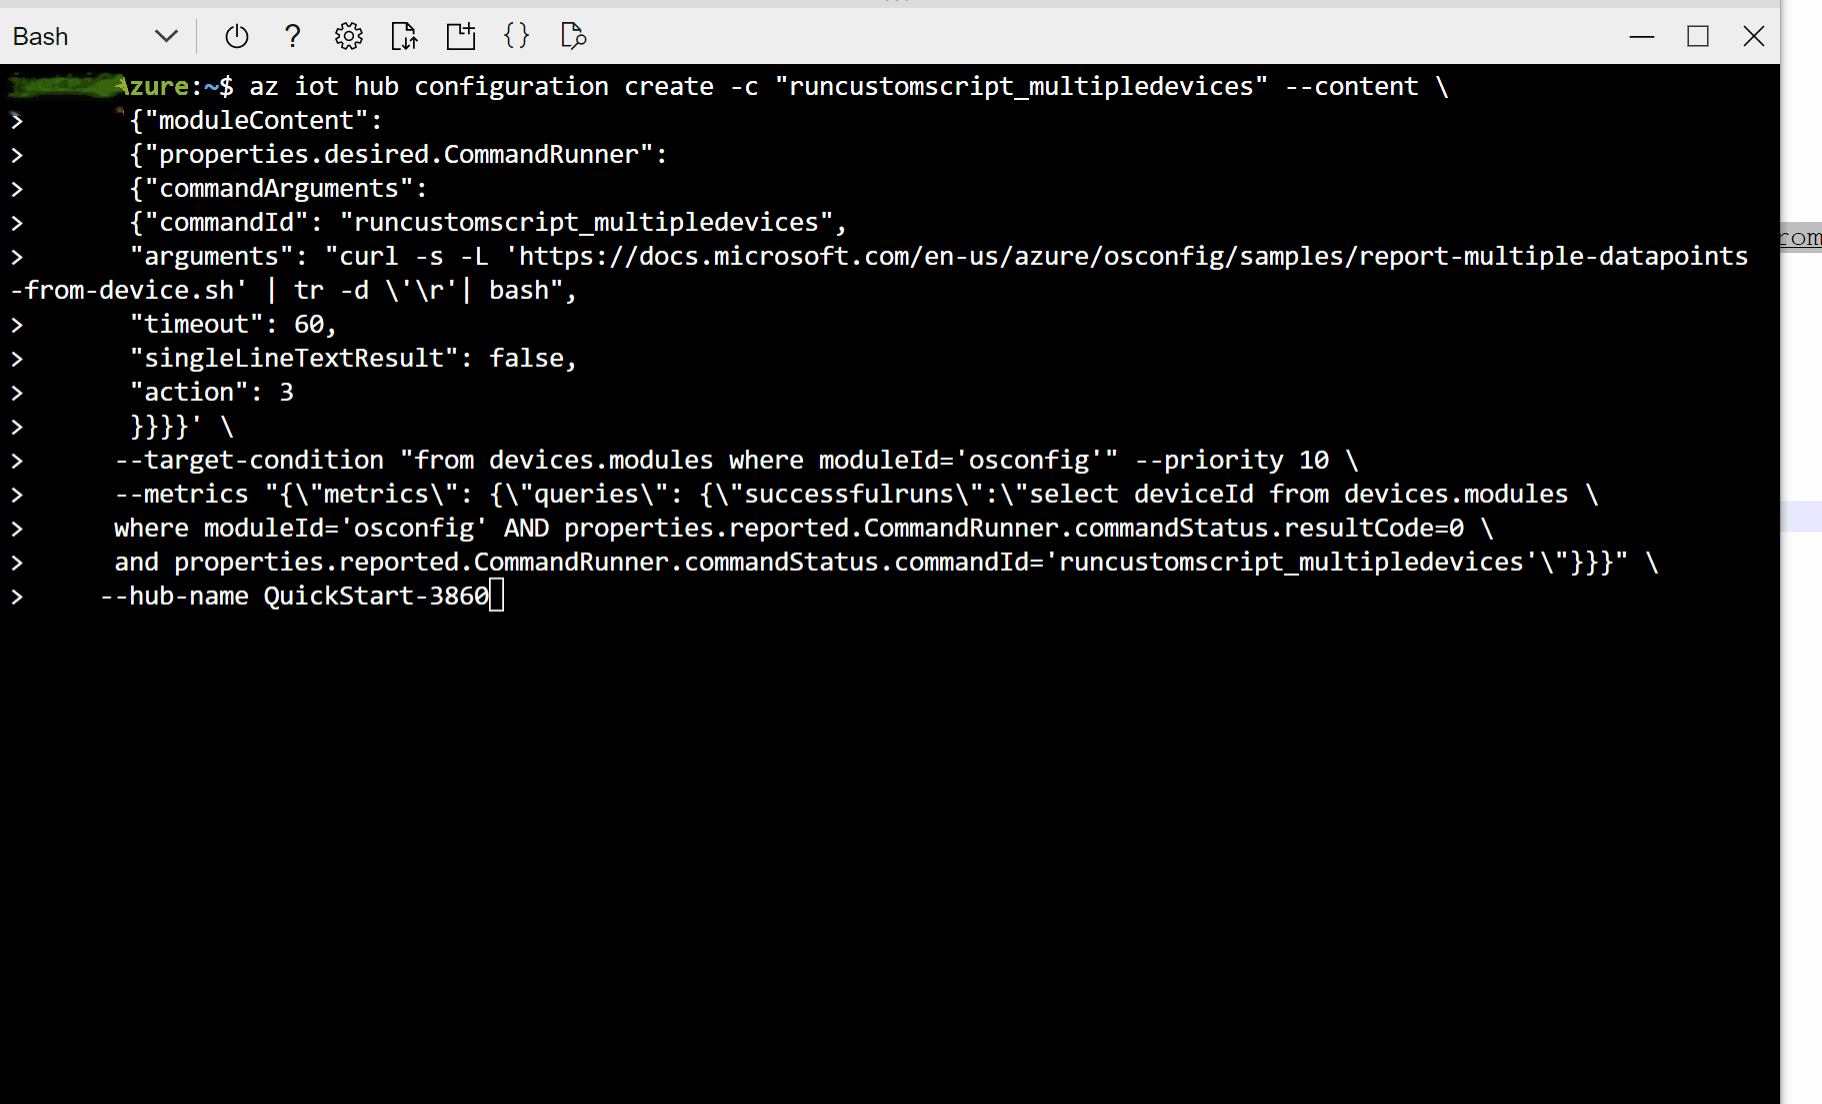 Captura de pantalla que muestra cómo crear una configuración para descargar y ejecutar un script personalizado en una flota de dispositivos mediante Bash